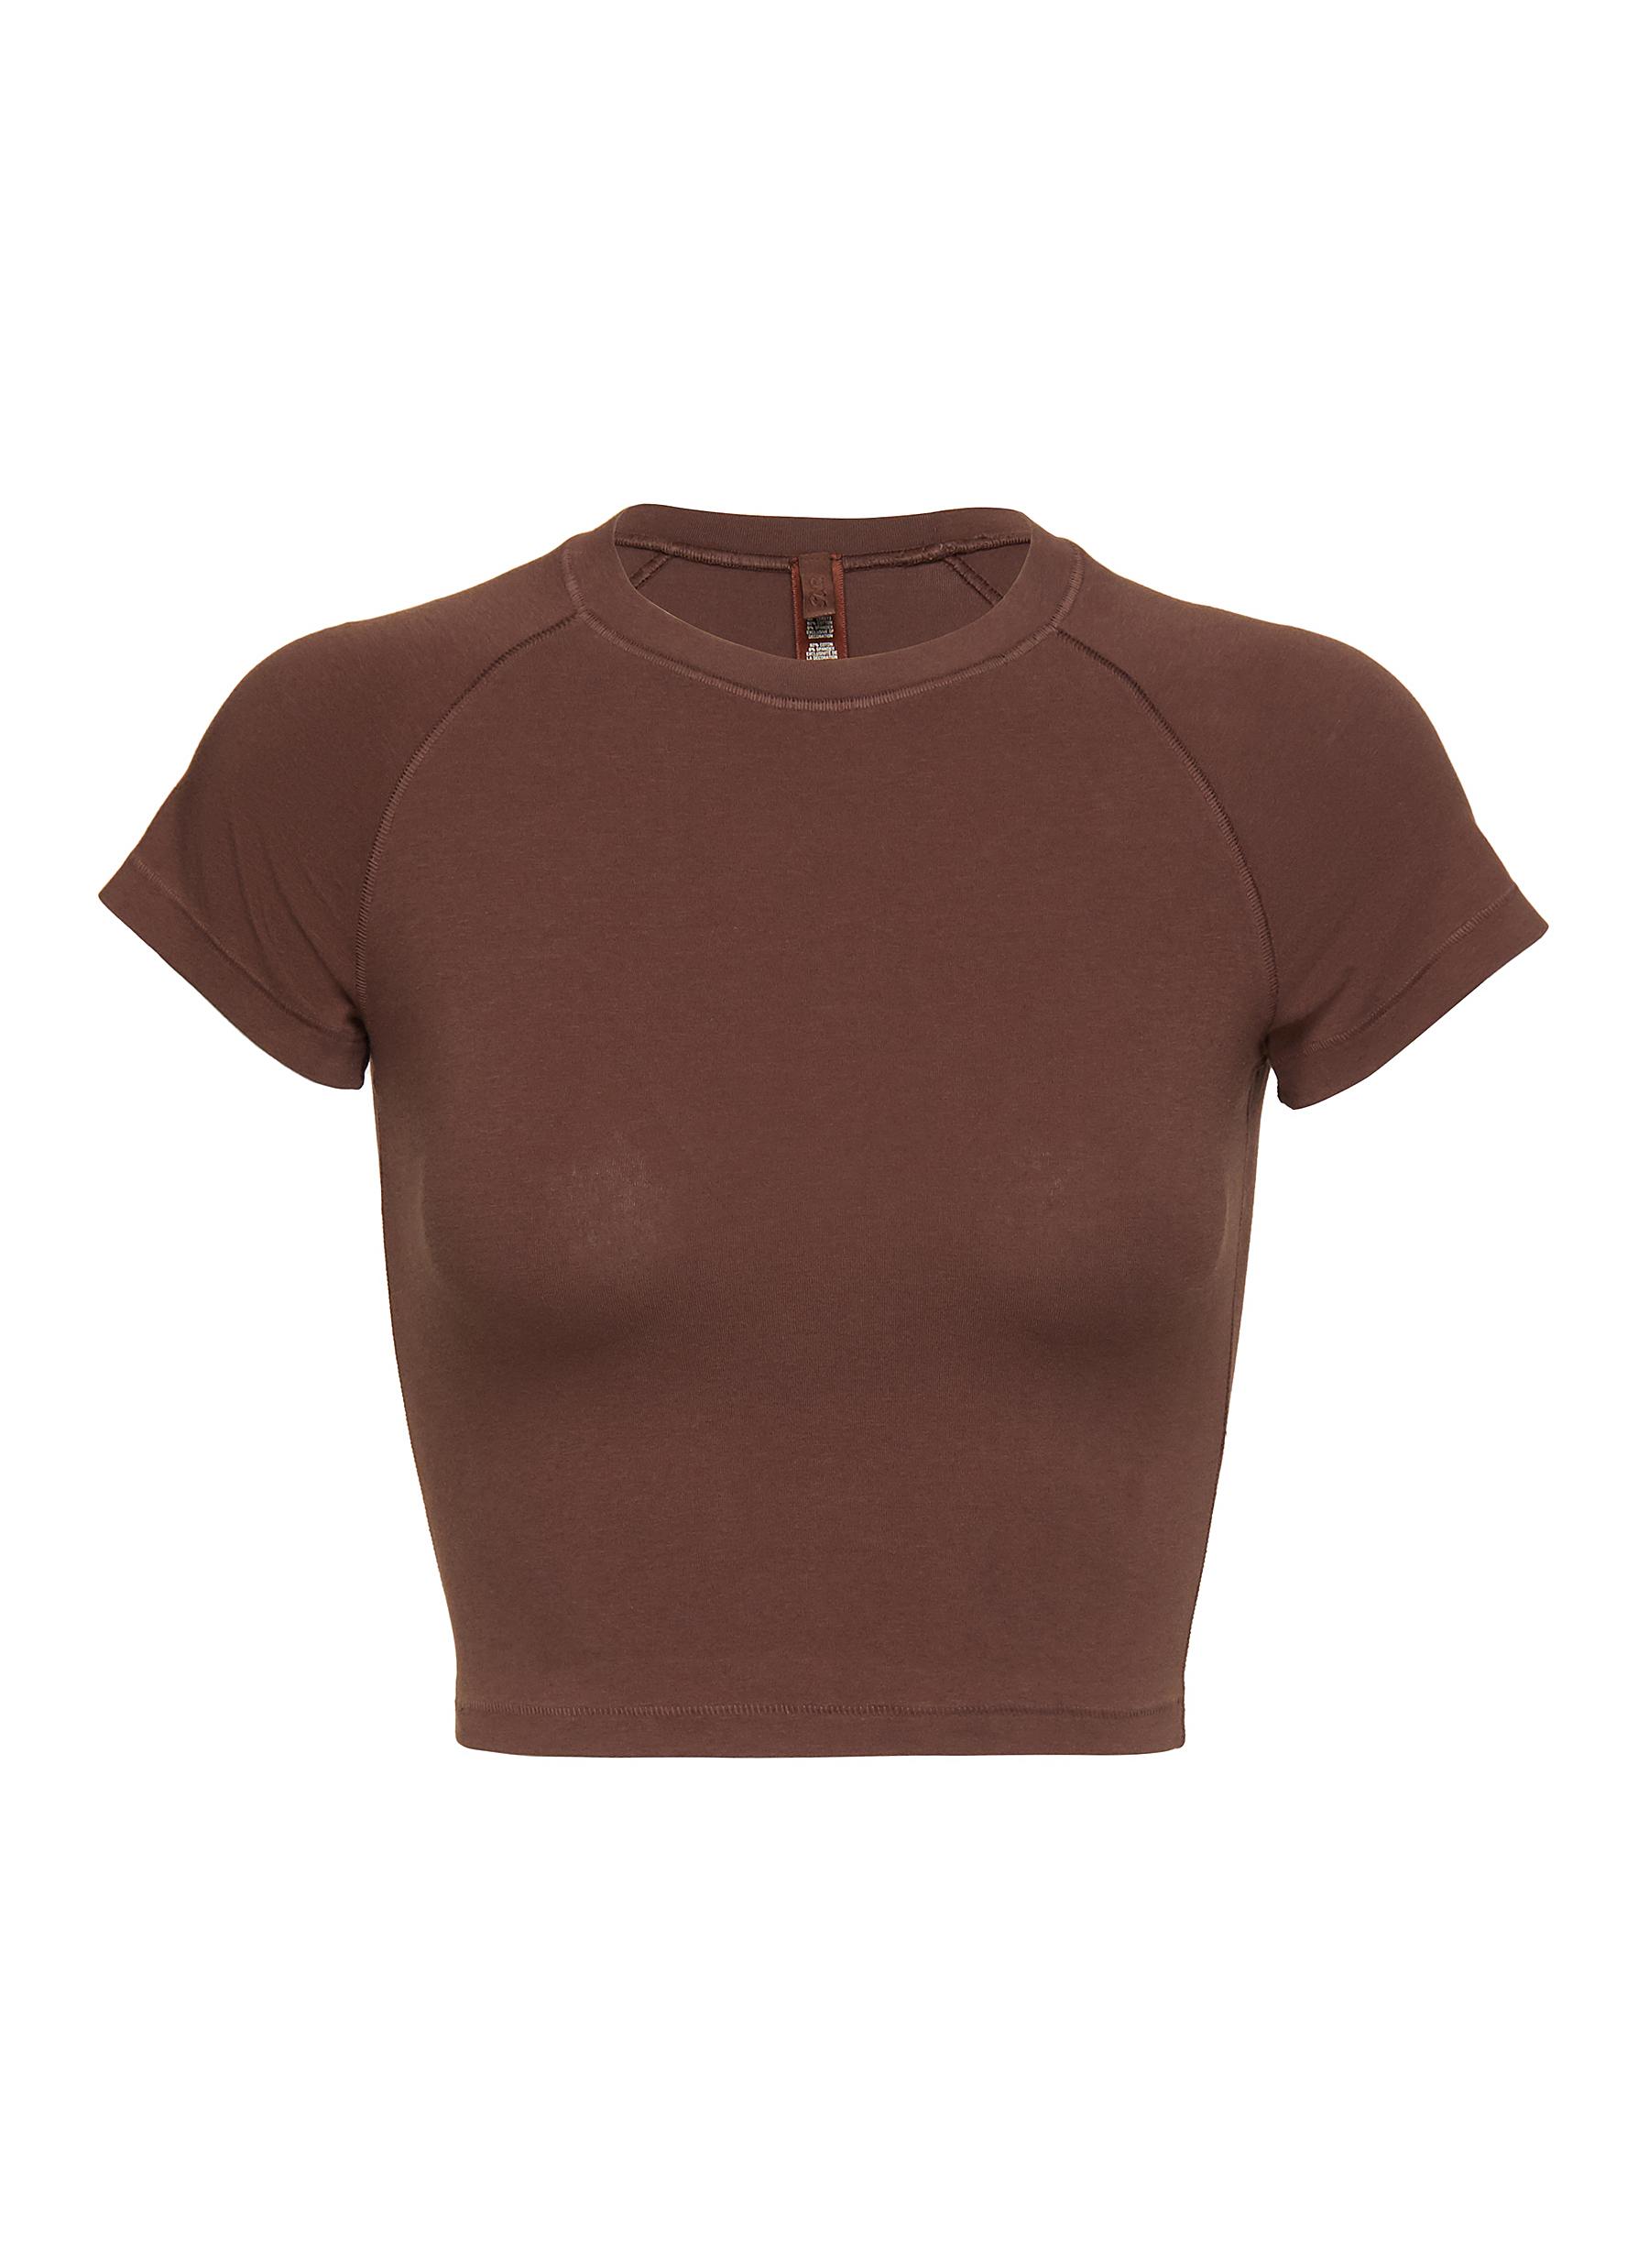 SKIMS: Brown New Vintage Cropped Raglan T-Shirt